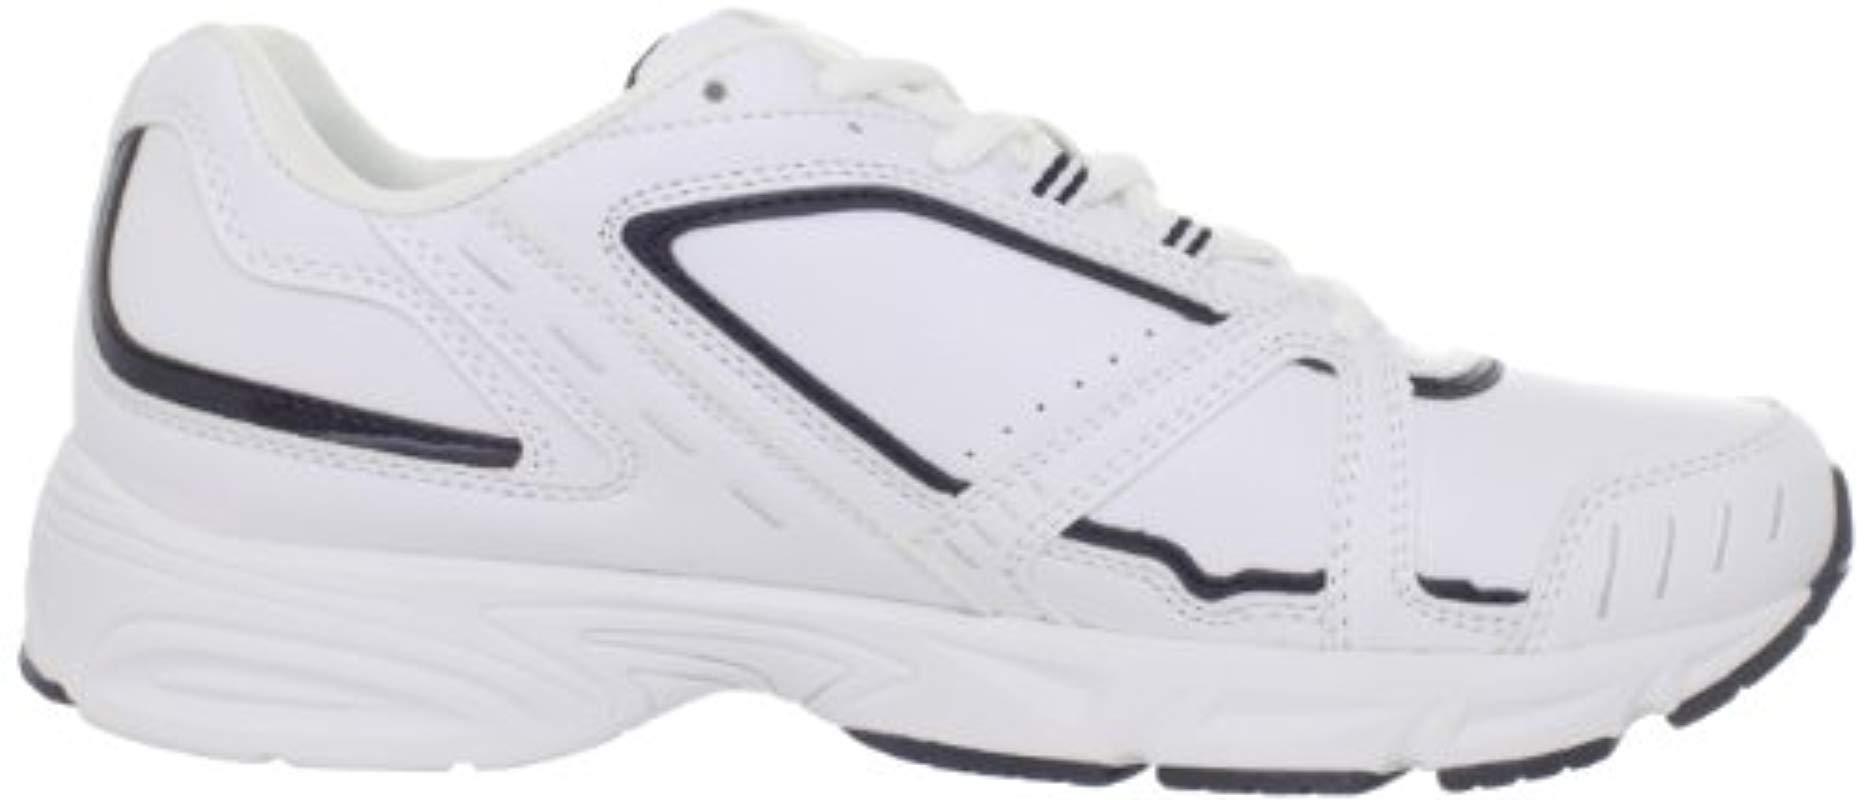 Fila Talon 3 Sneaker in White/Navy (White) for Men - Lyst